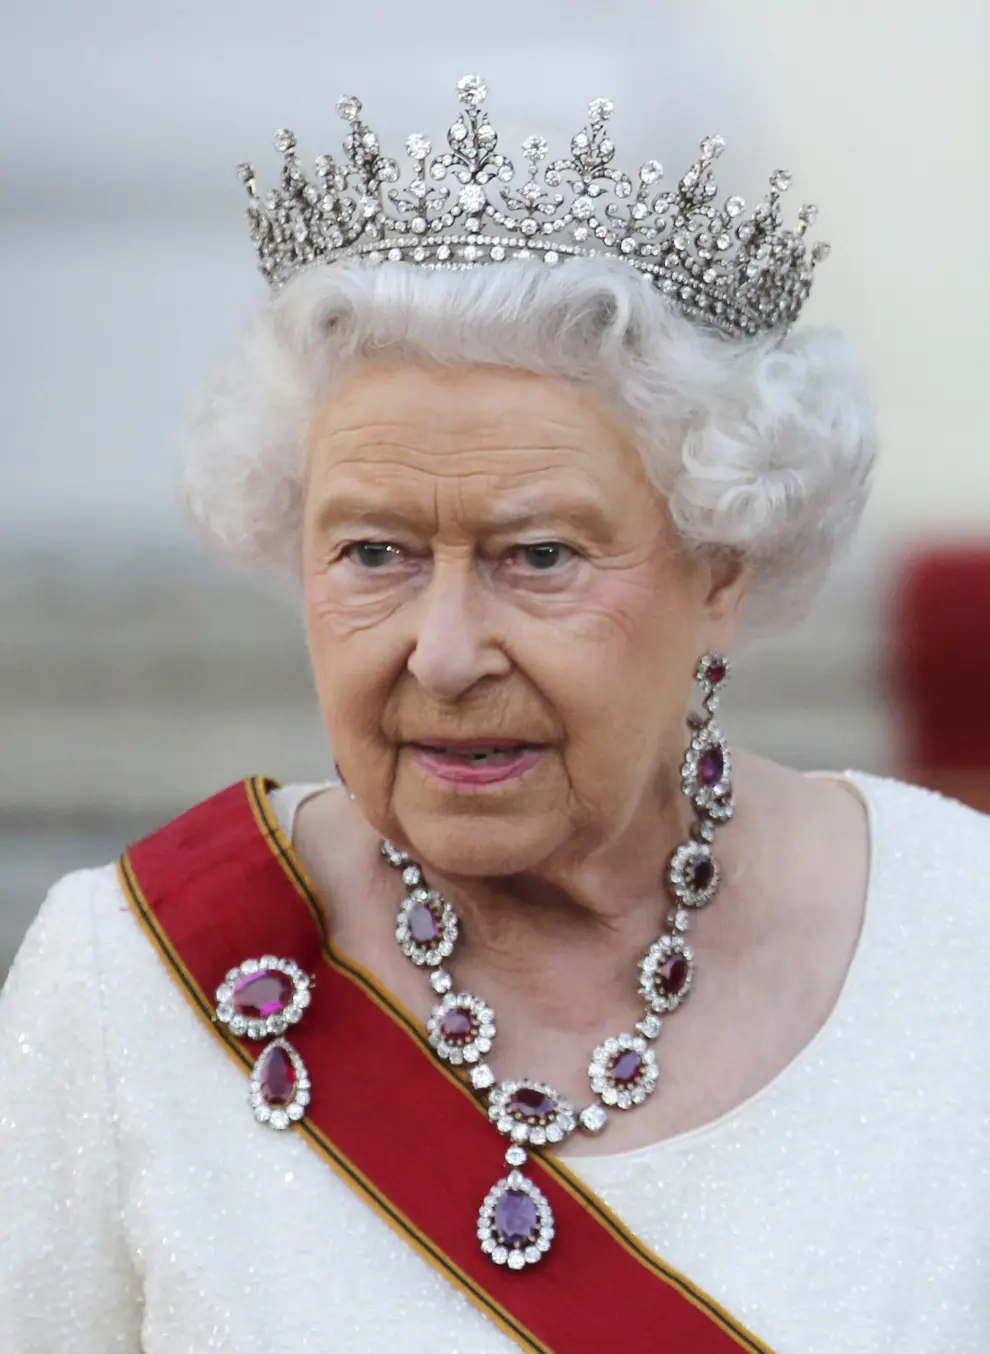 La reina Isabel II cumplirá 90 años el próximo 21 de abril.